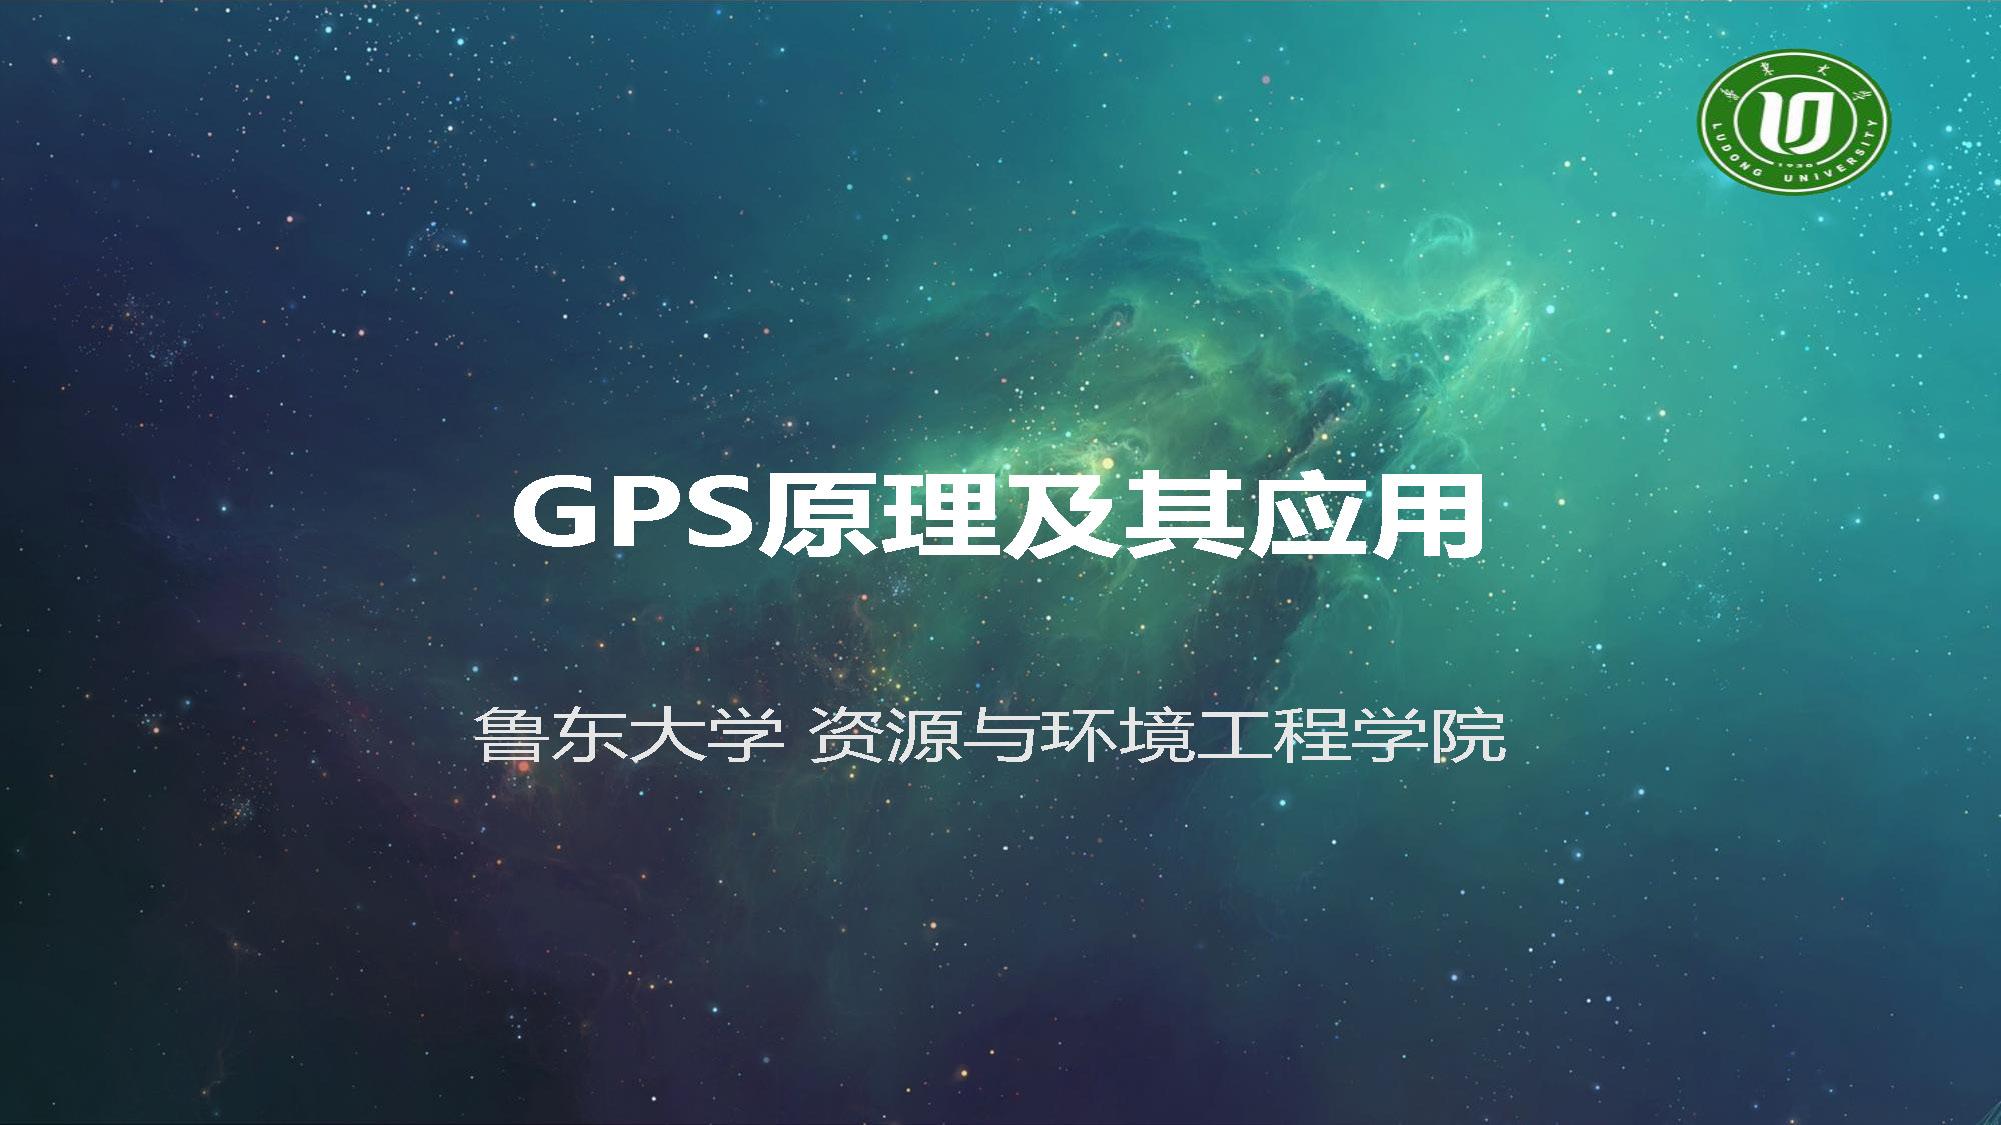 GPS原理及应用_智慧树知到答案2021年